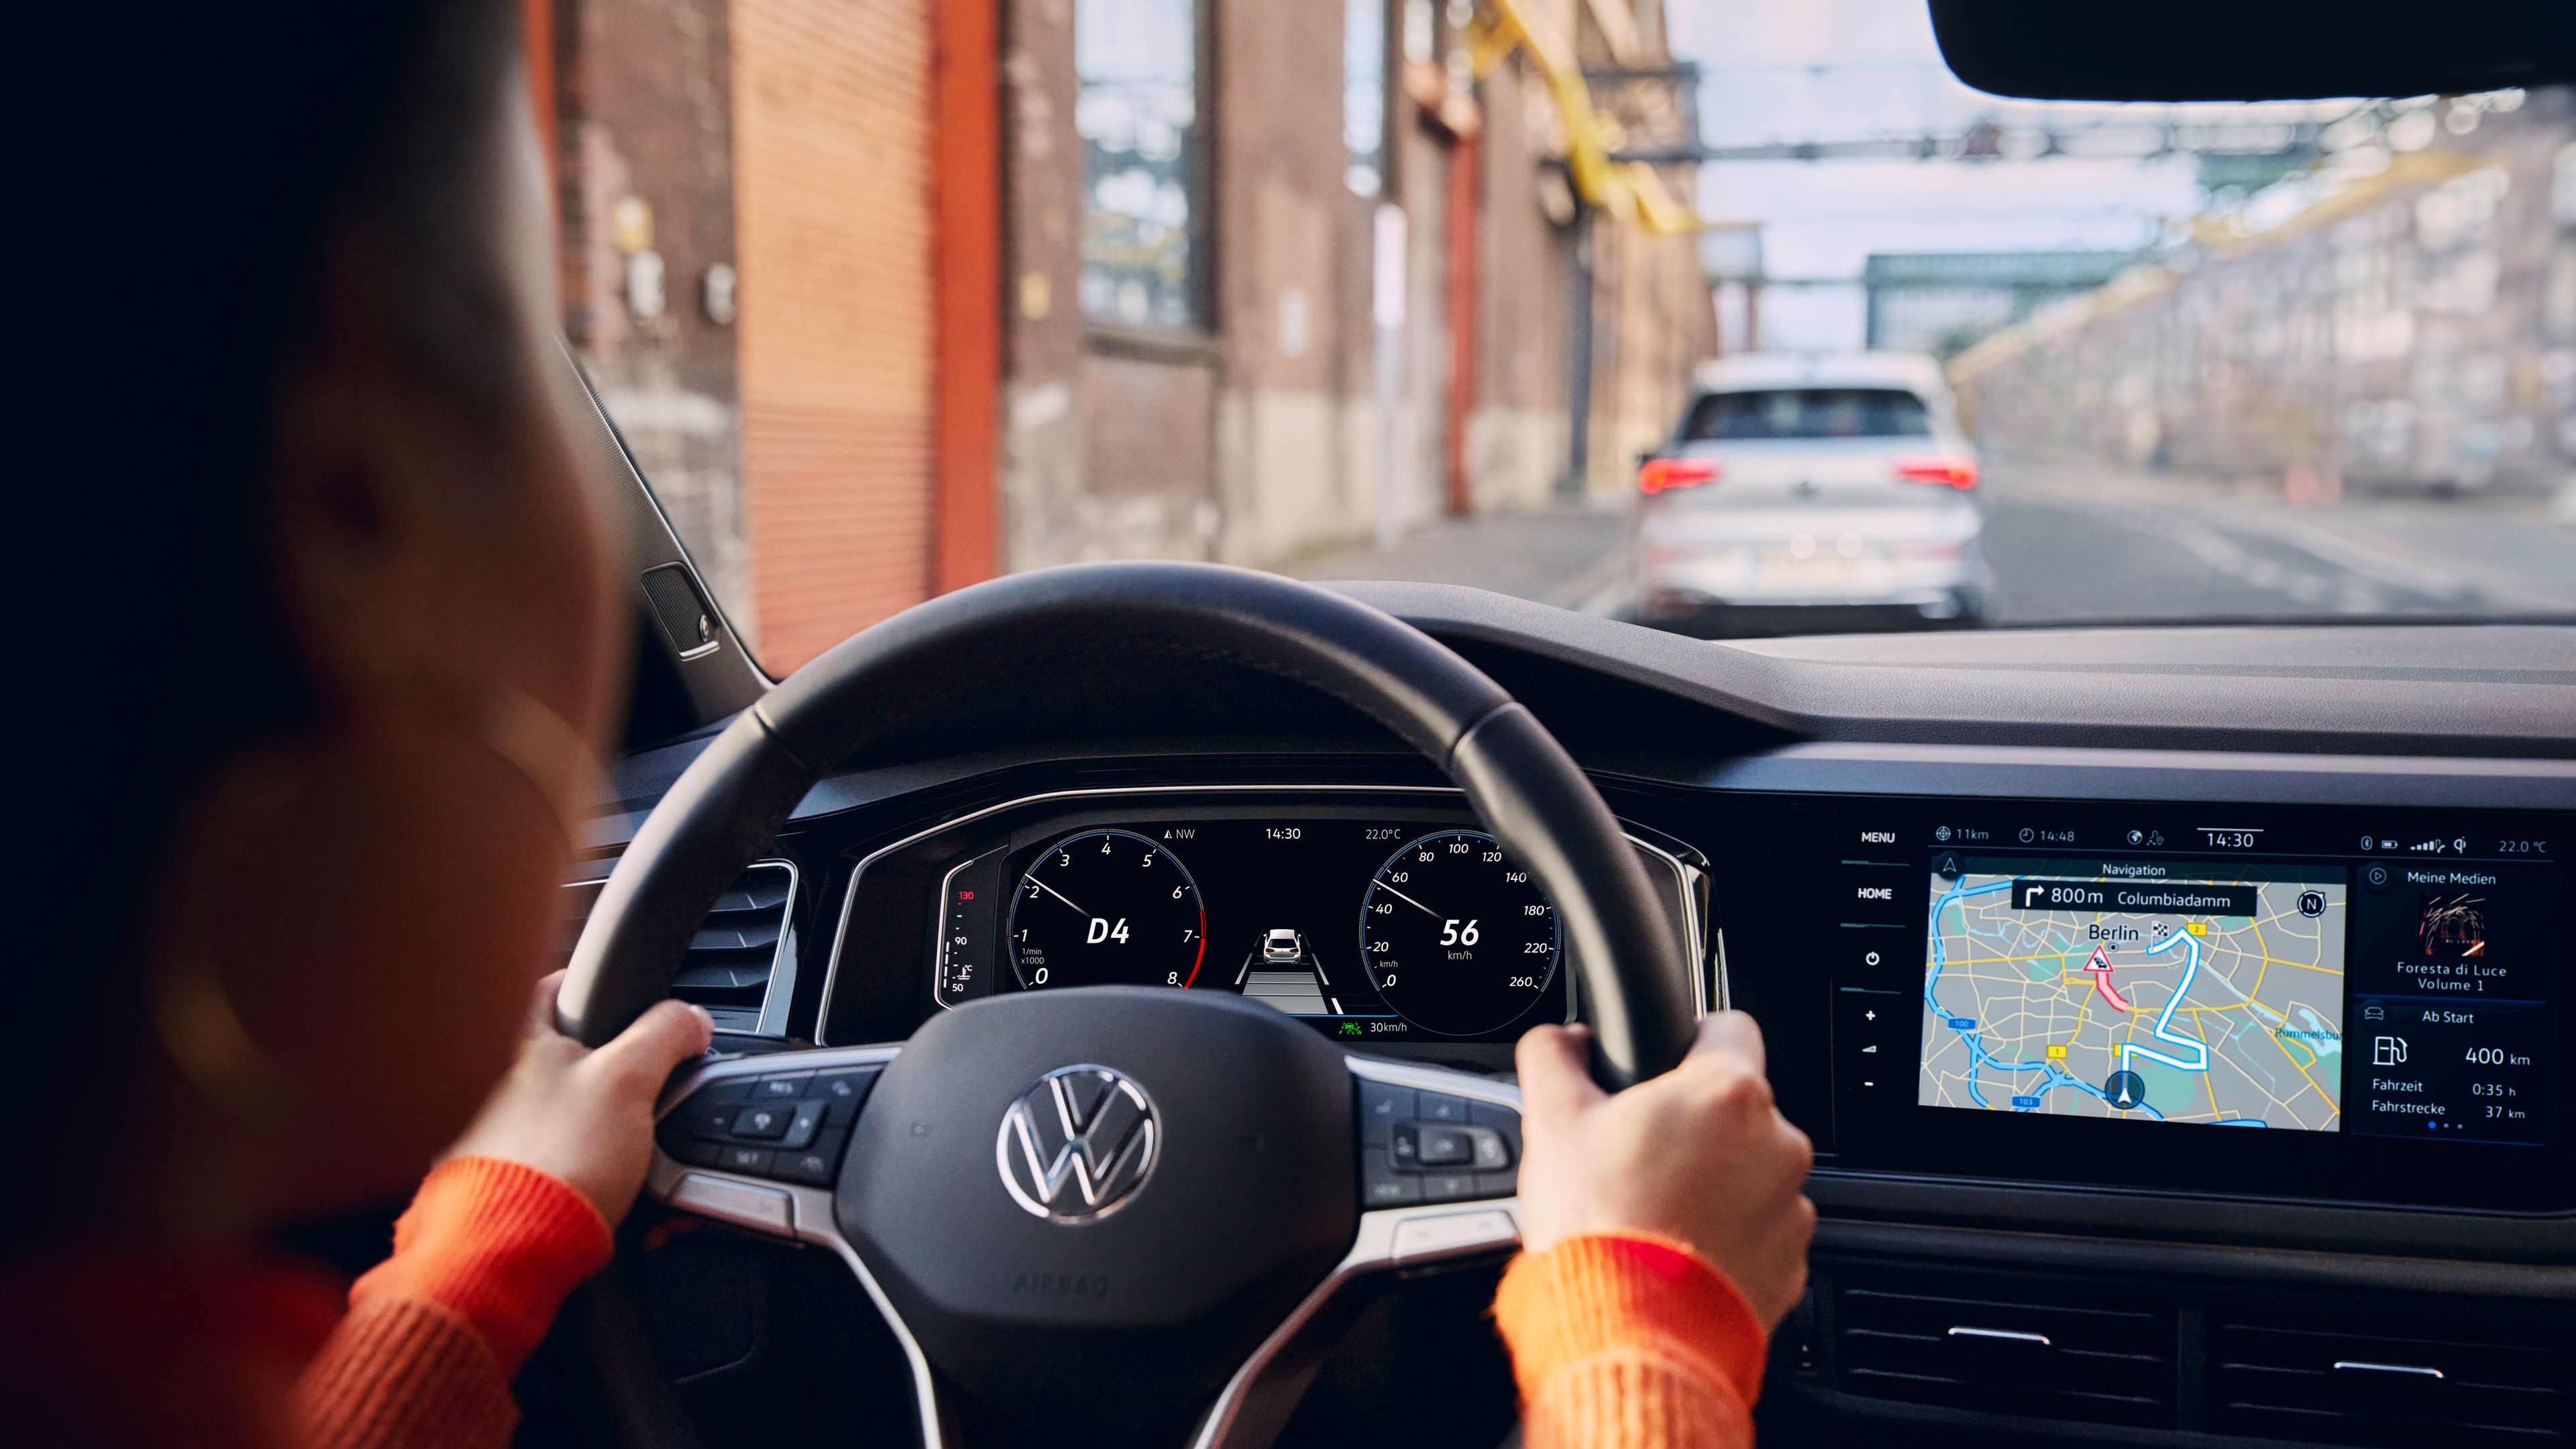 Aktives Navigationssystem auf dem Display eines VW.